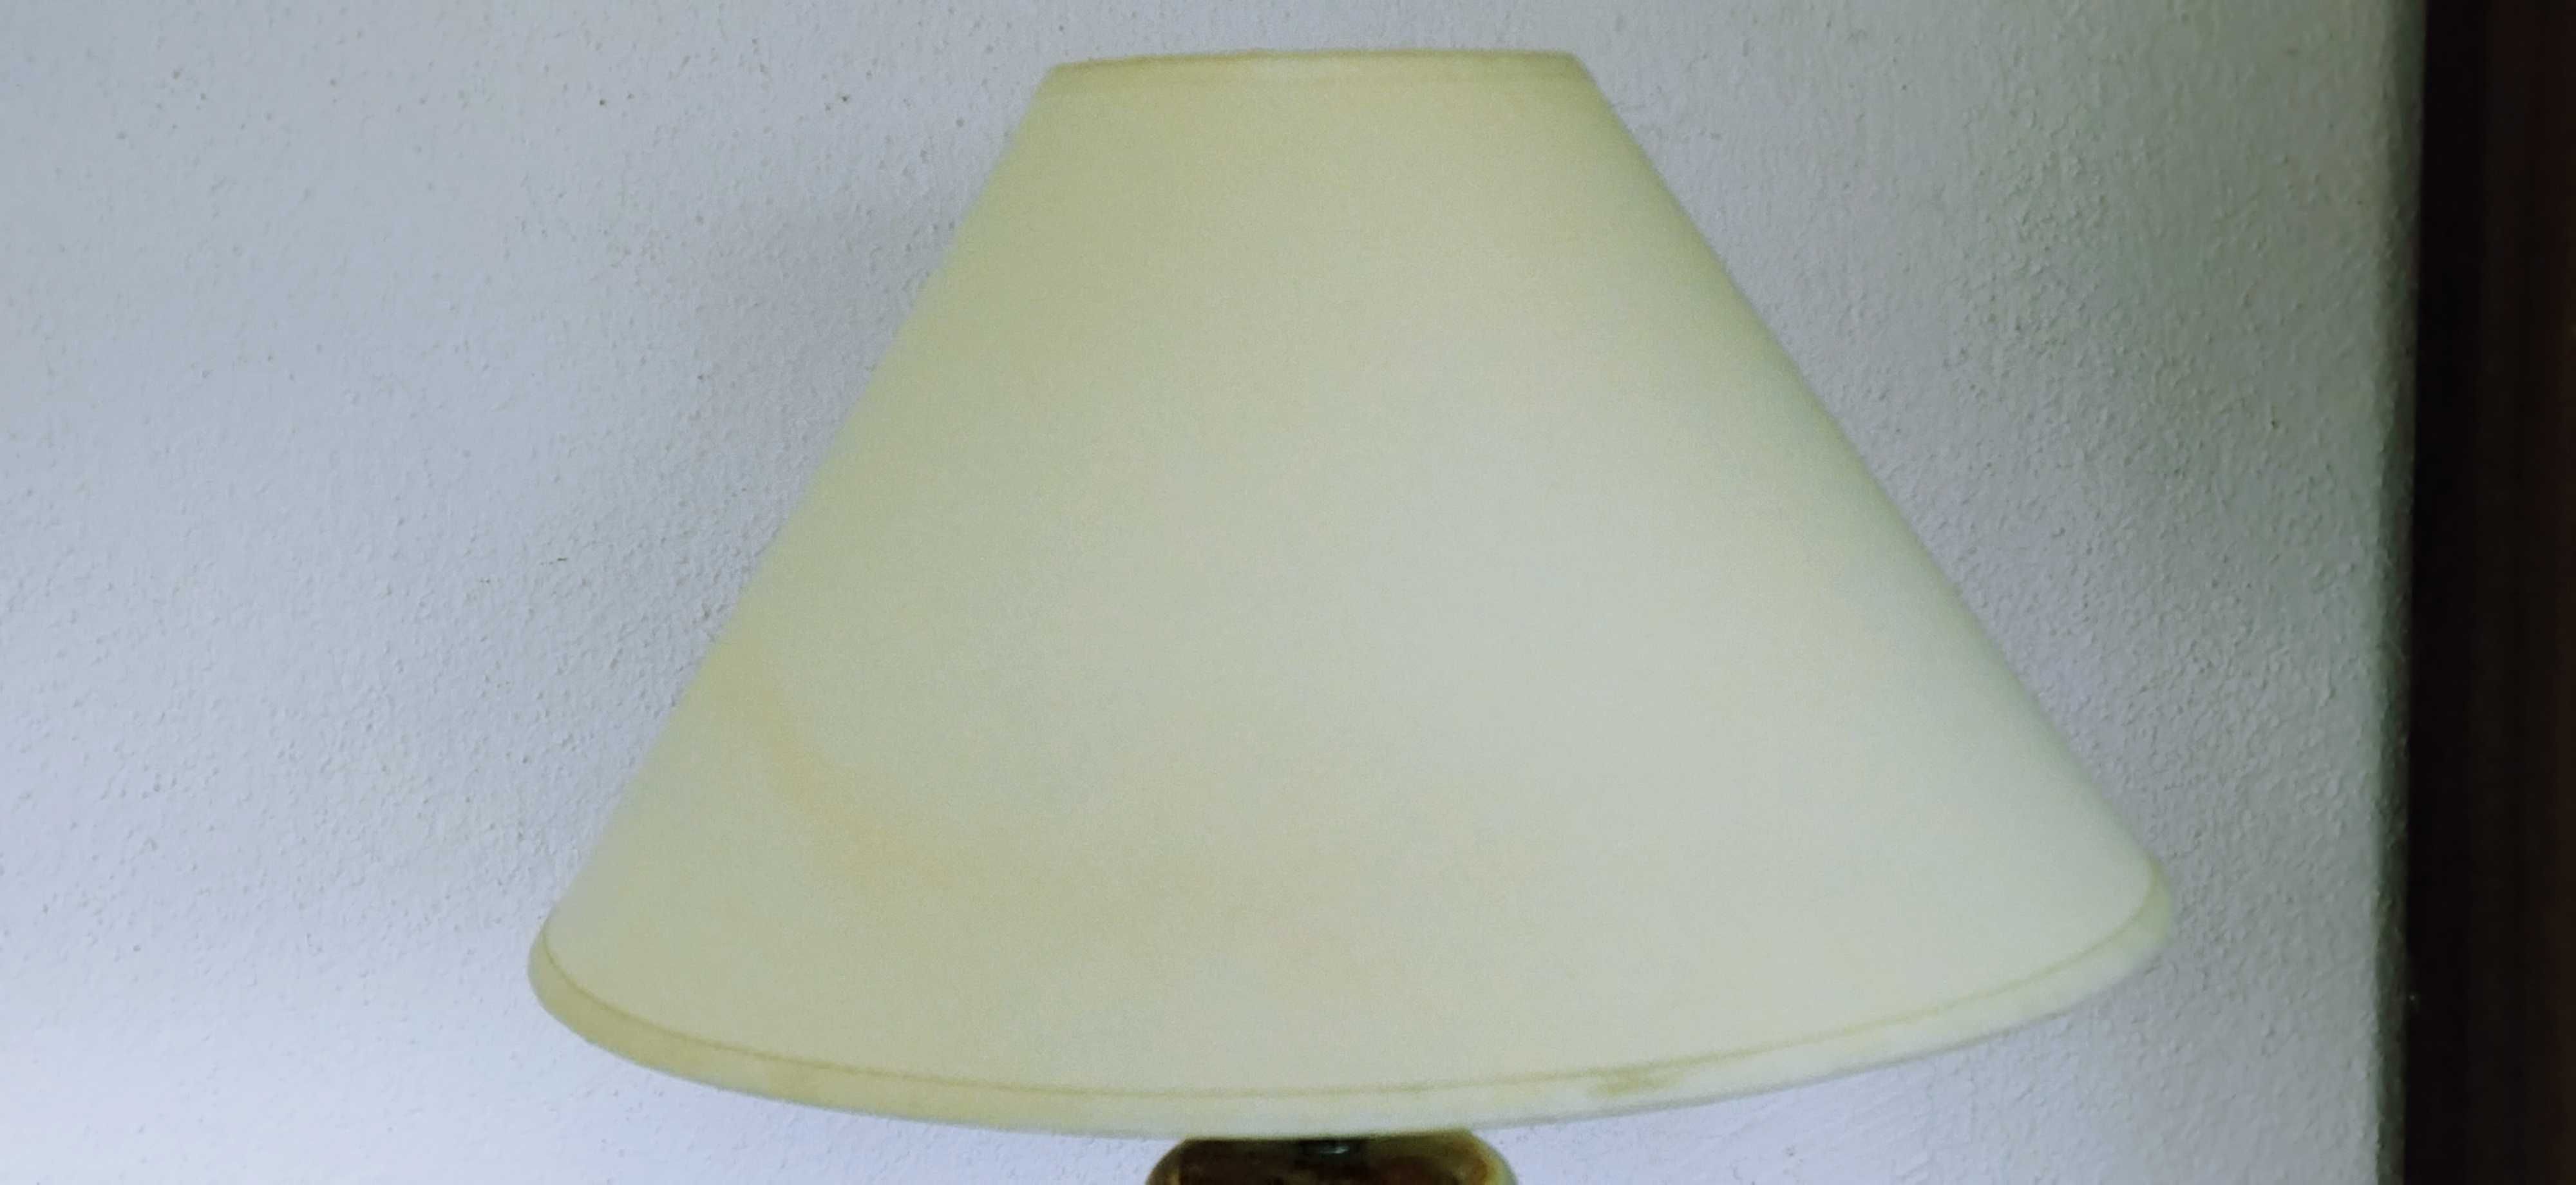 Лампа настольная.Бронза,оникс светло-зеленый.59×30 см.Франция